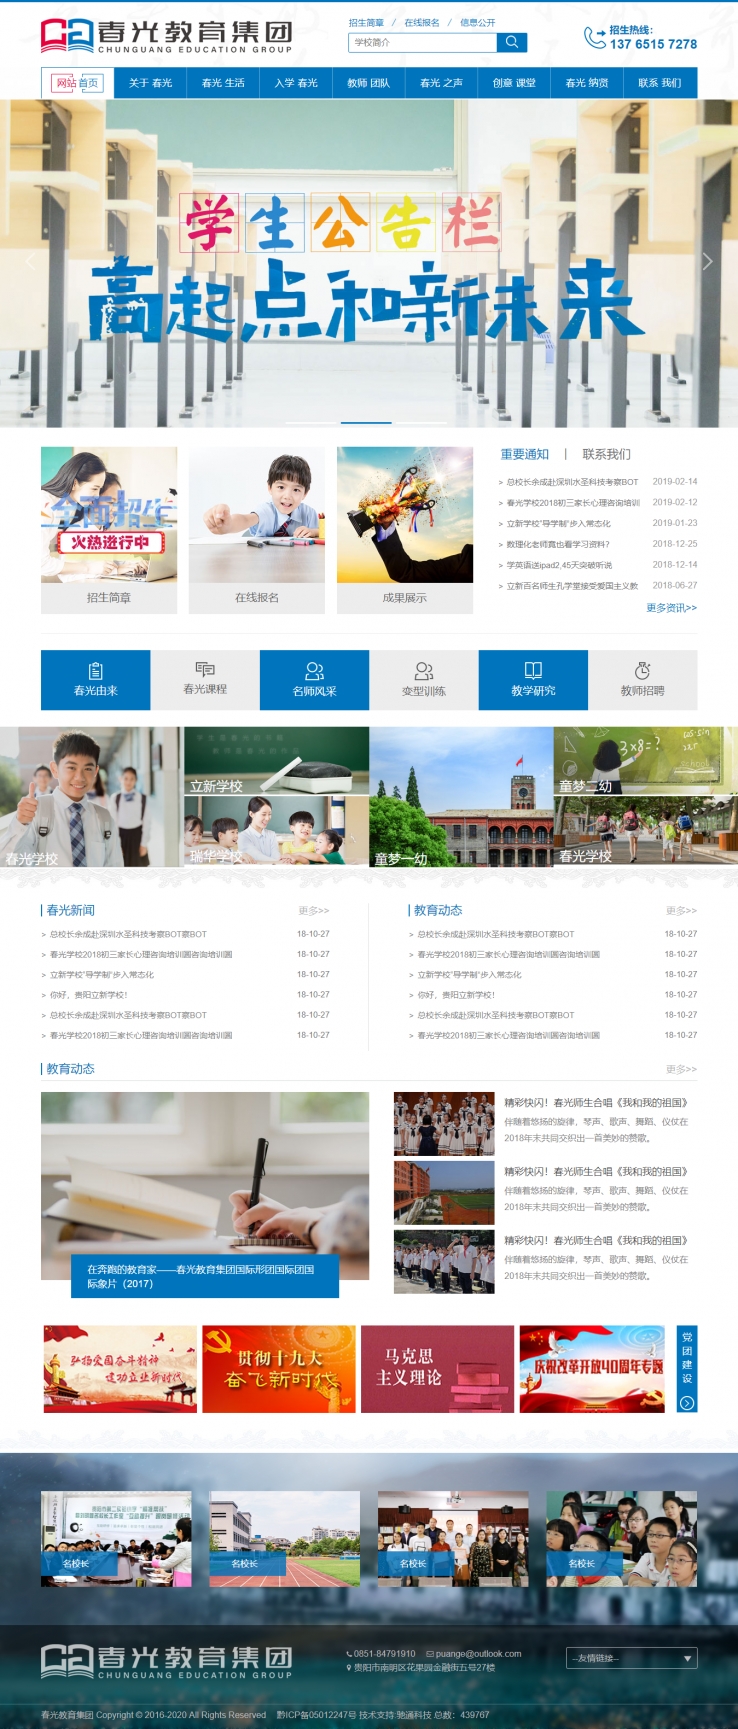 蓝色简洁风格的教育机构企业网站源码下载